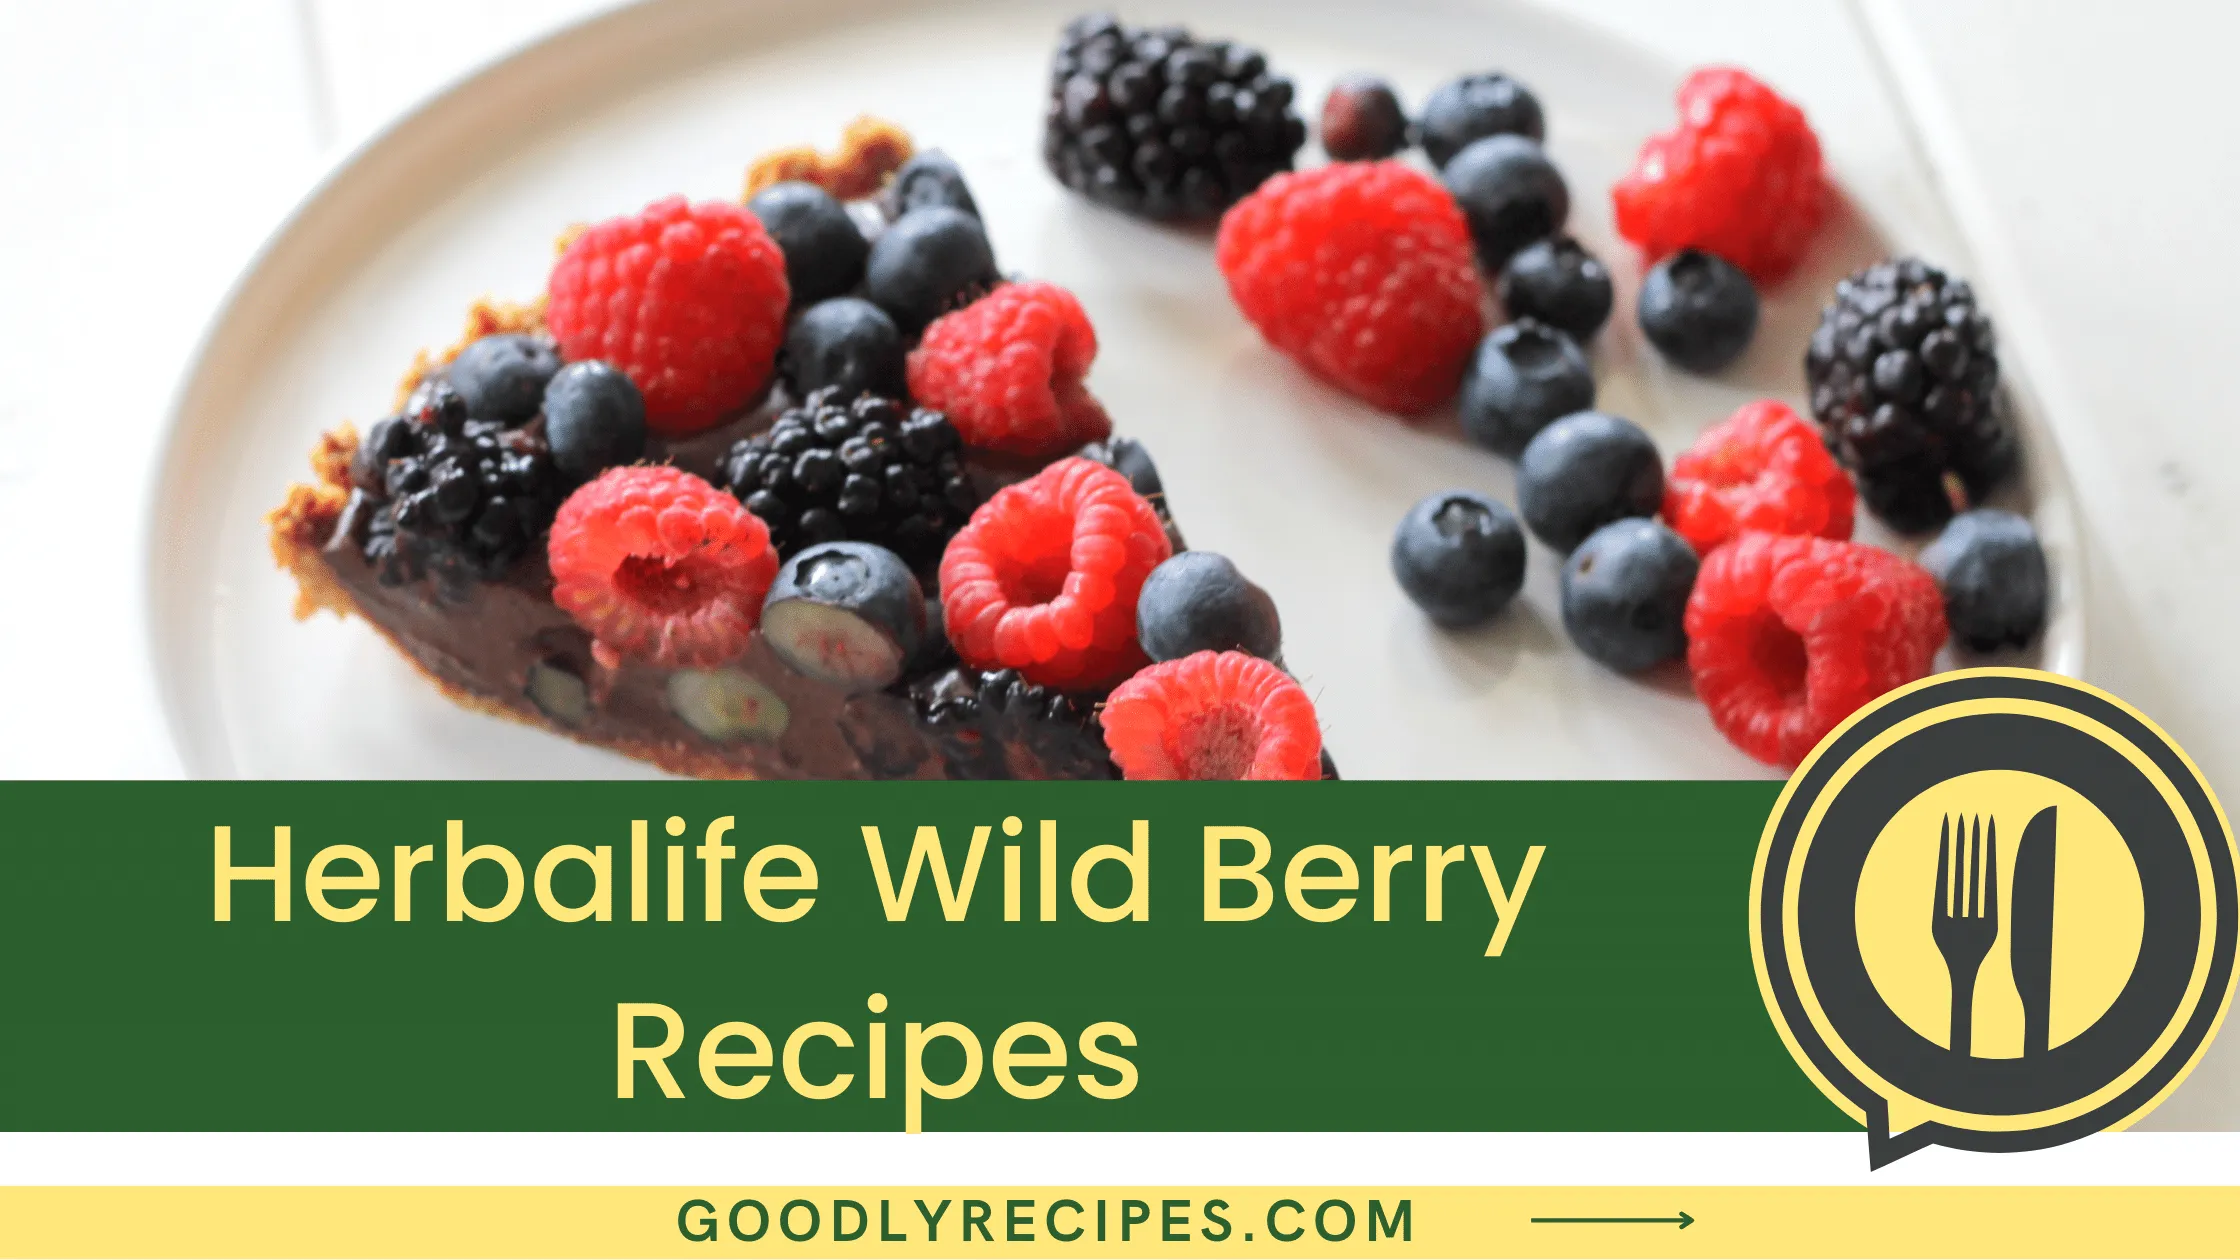 Herbalife Wild Berry Recipes